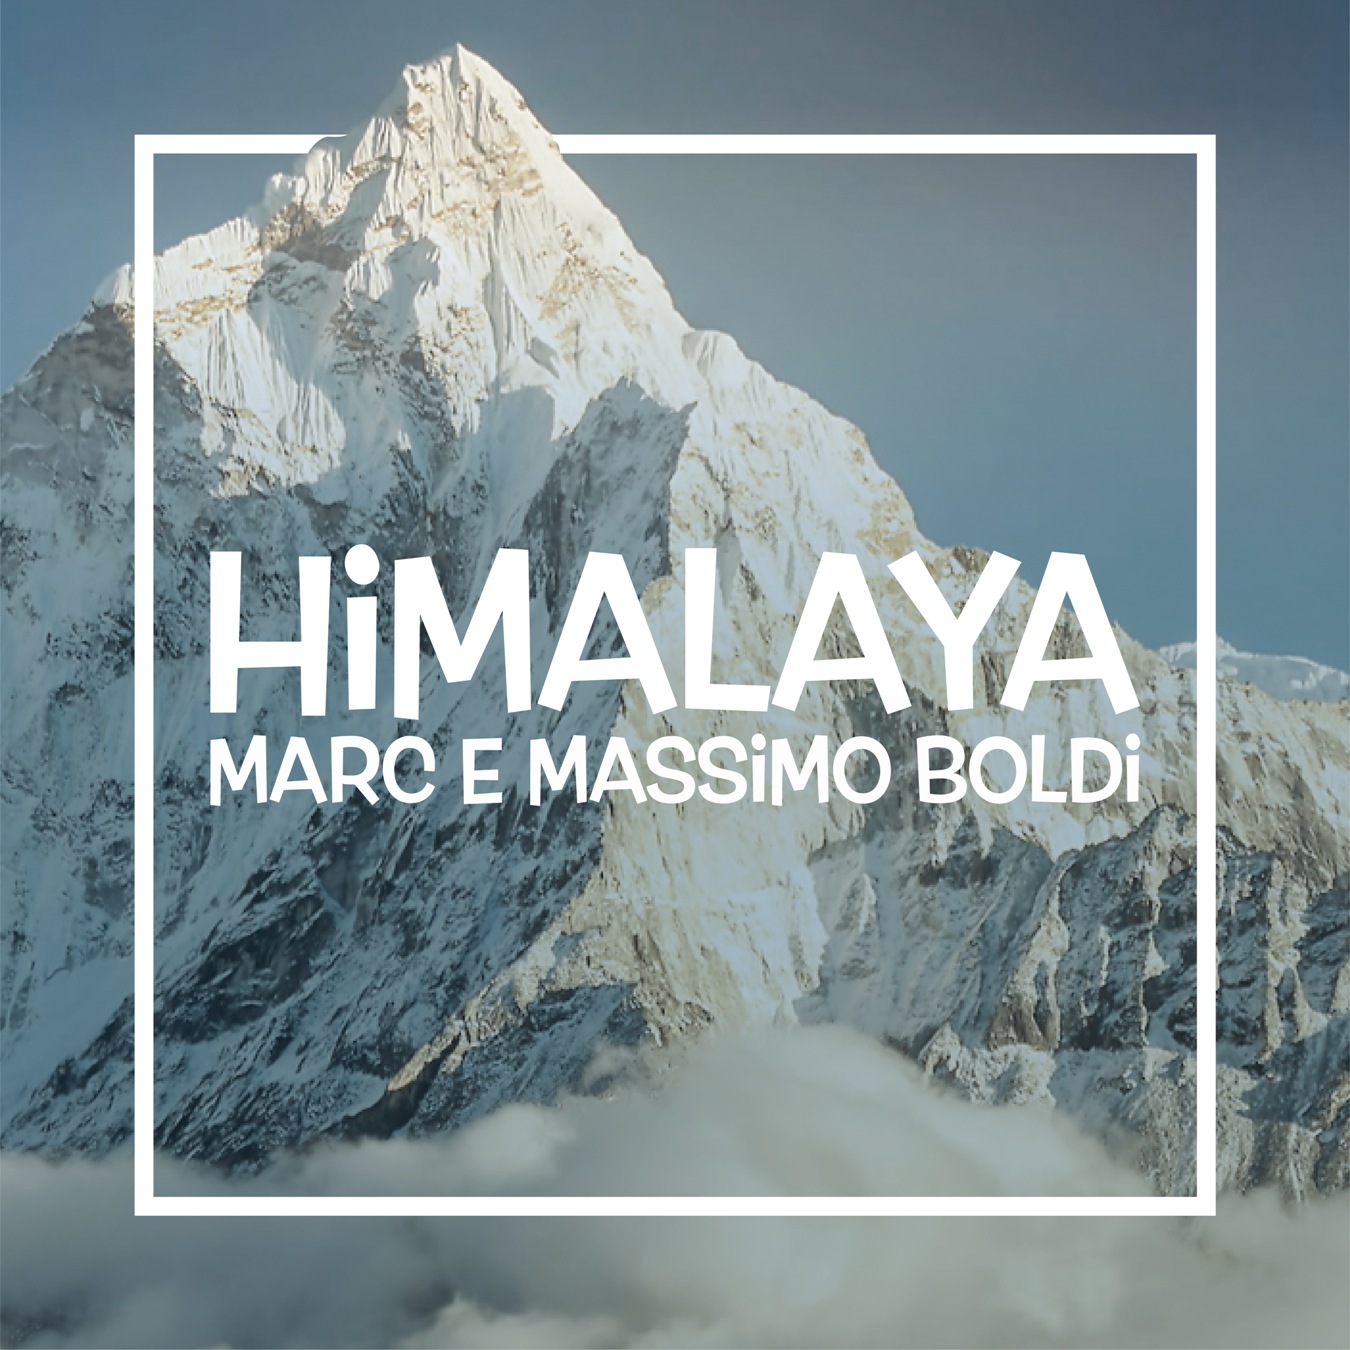 Marc e Massimo Boldi “Himalaya”, comicità e leggerezza in un brano che fa riflettere